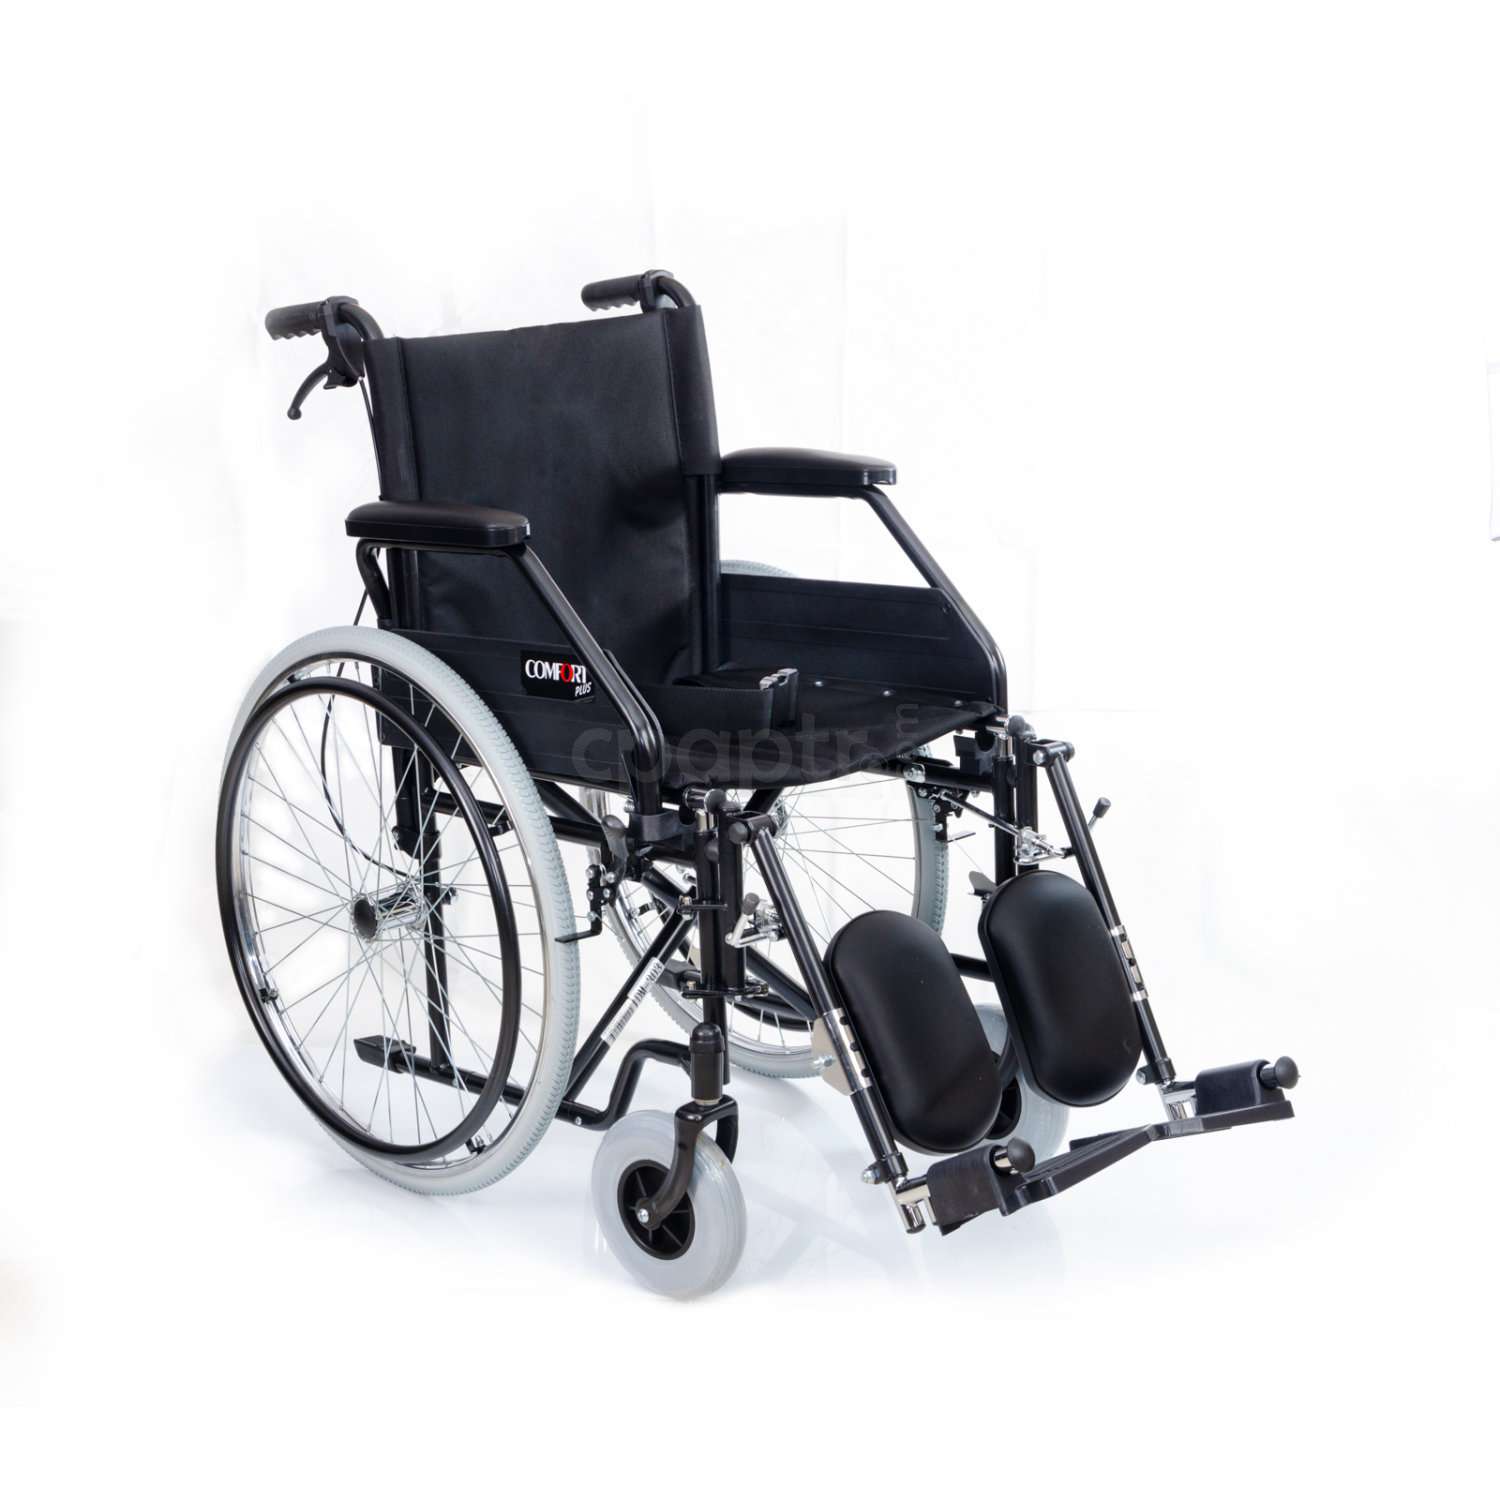 Comfort Özellikli Tekerlekli Sandalye